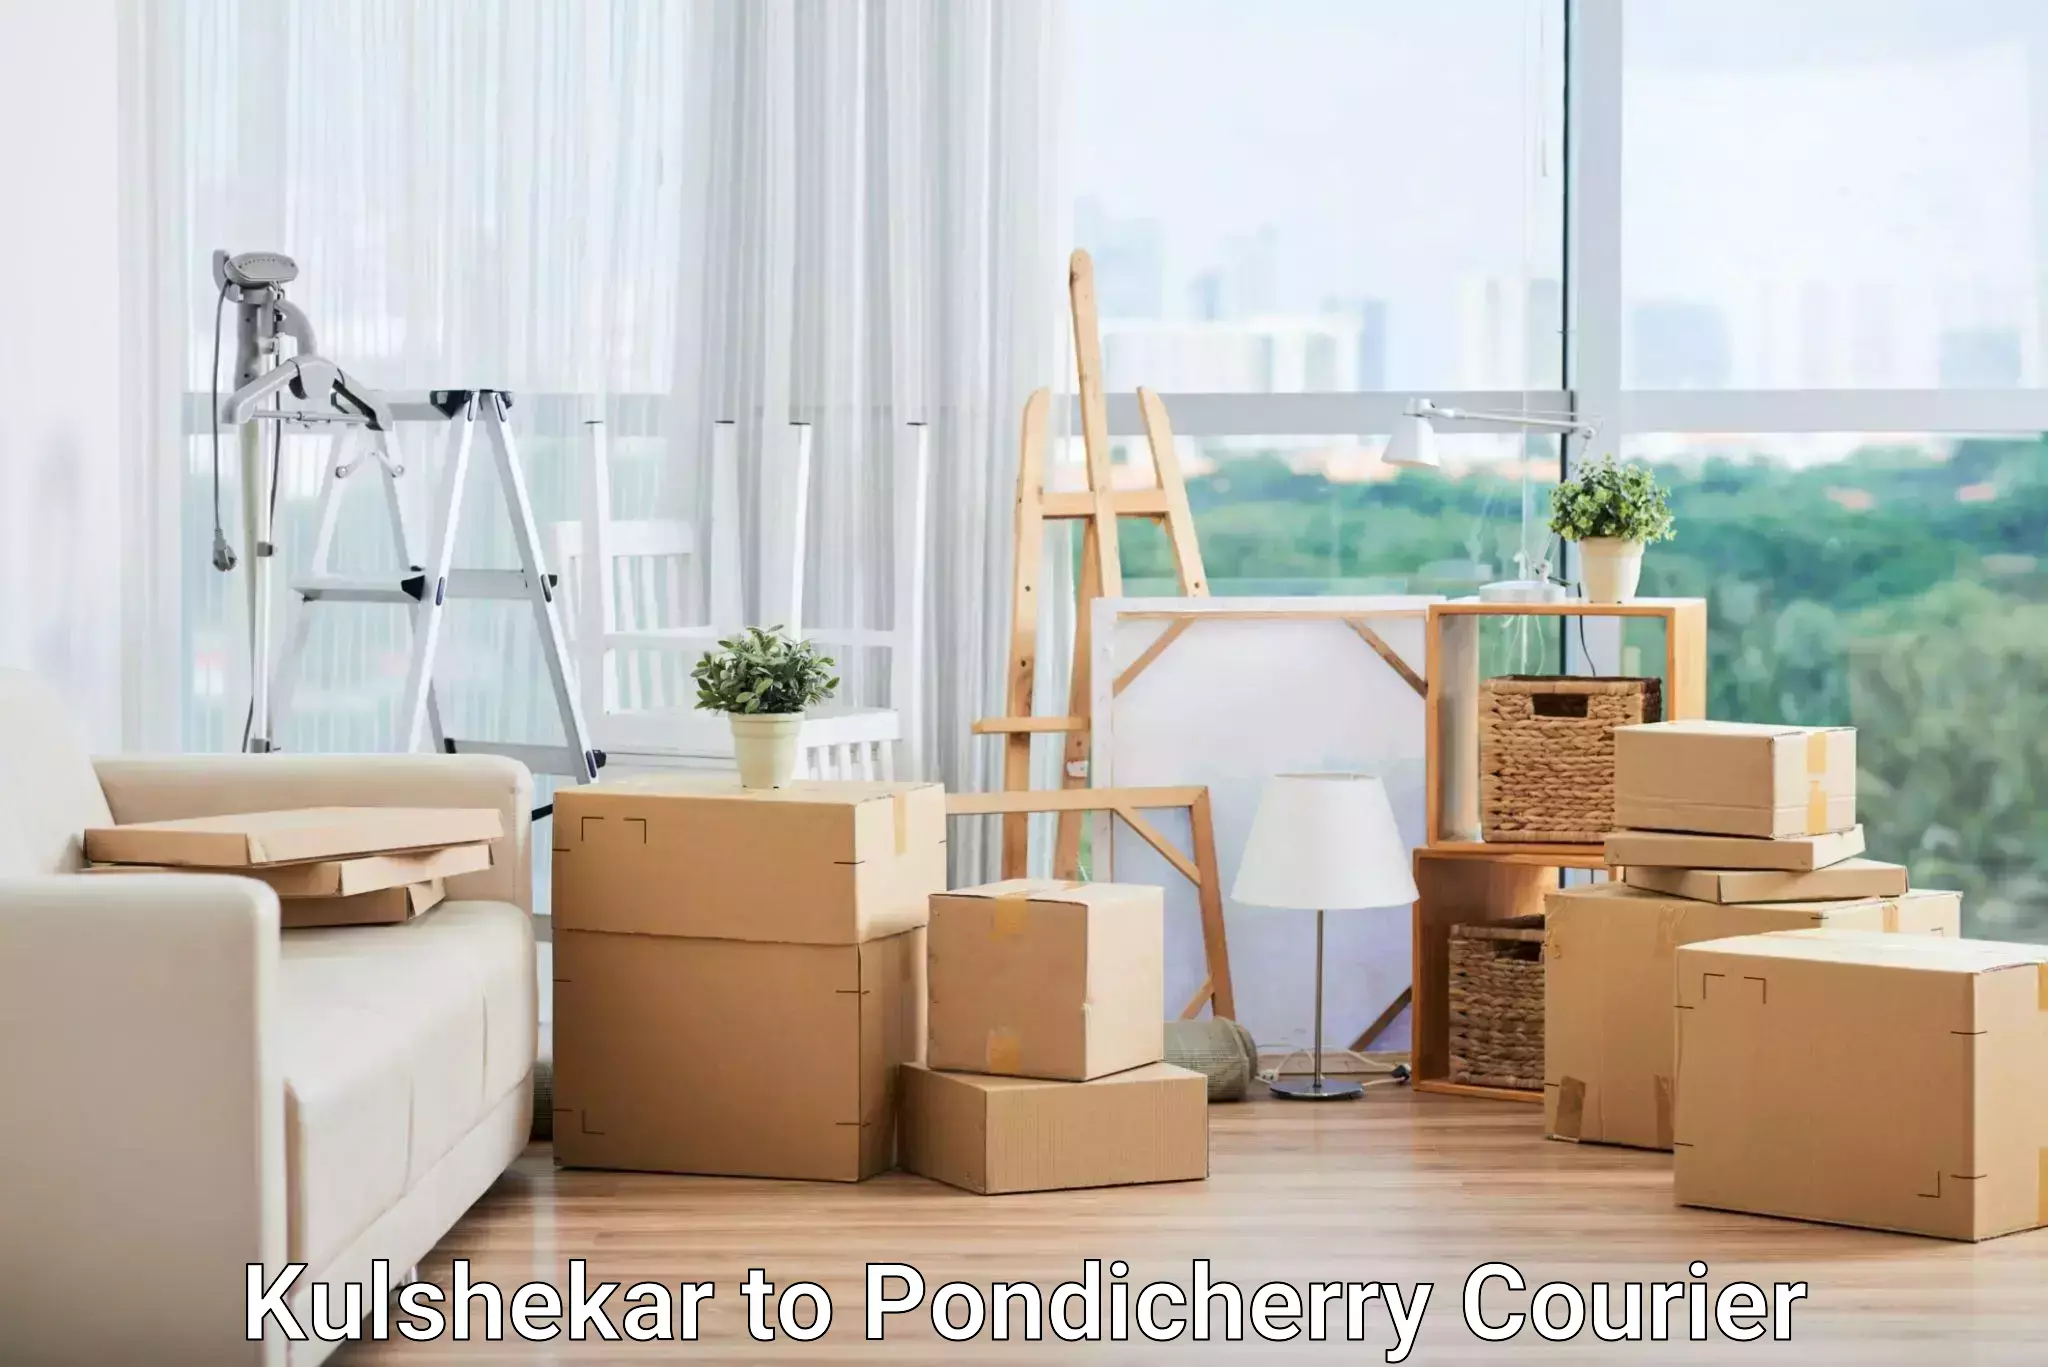 Premium courier services Kulshekar to Pondicherry